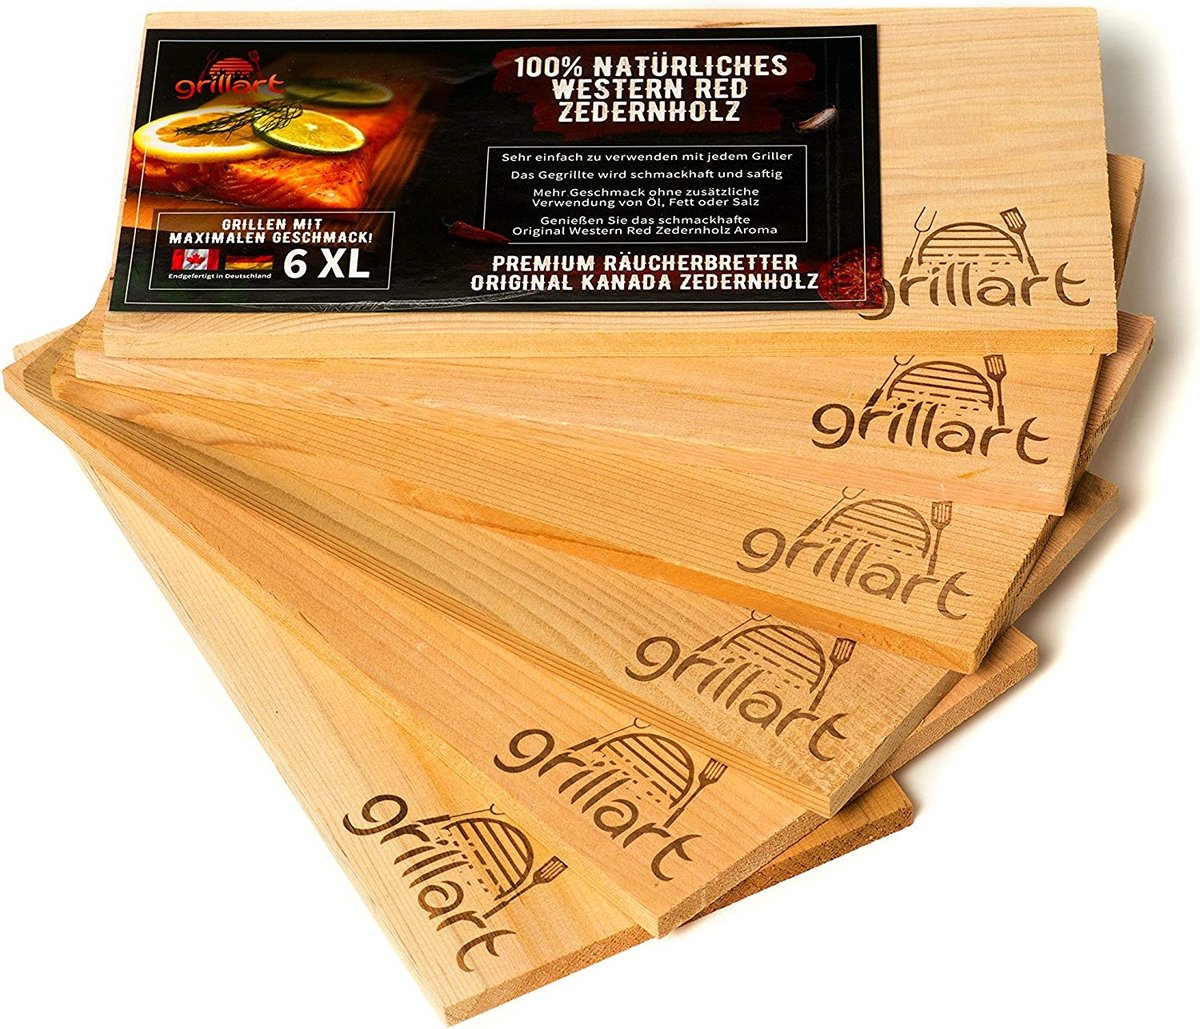 XL-grillplanken, cederhouten plank om te grillen, rookplanken van cederhout, gemaakt van 100% natuurlijk Western Red cederhout voor een bijzondere barbecue-smaak